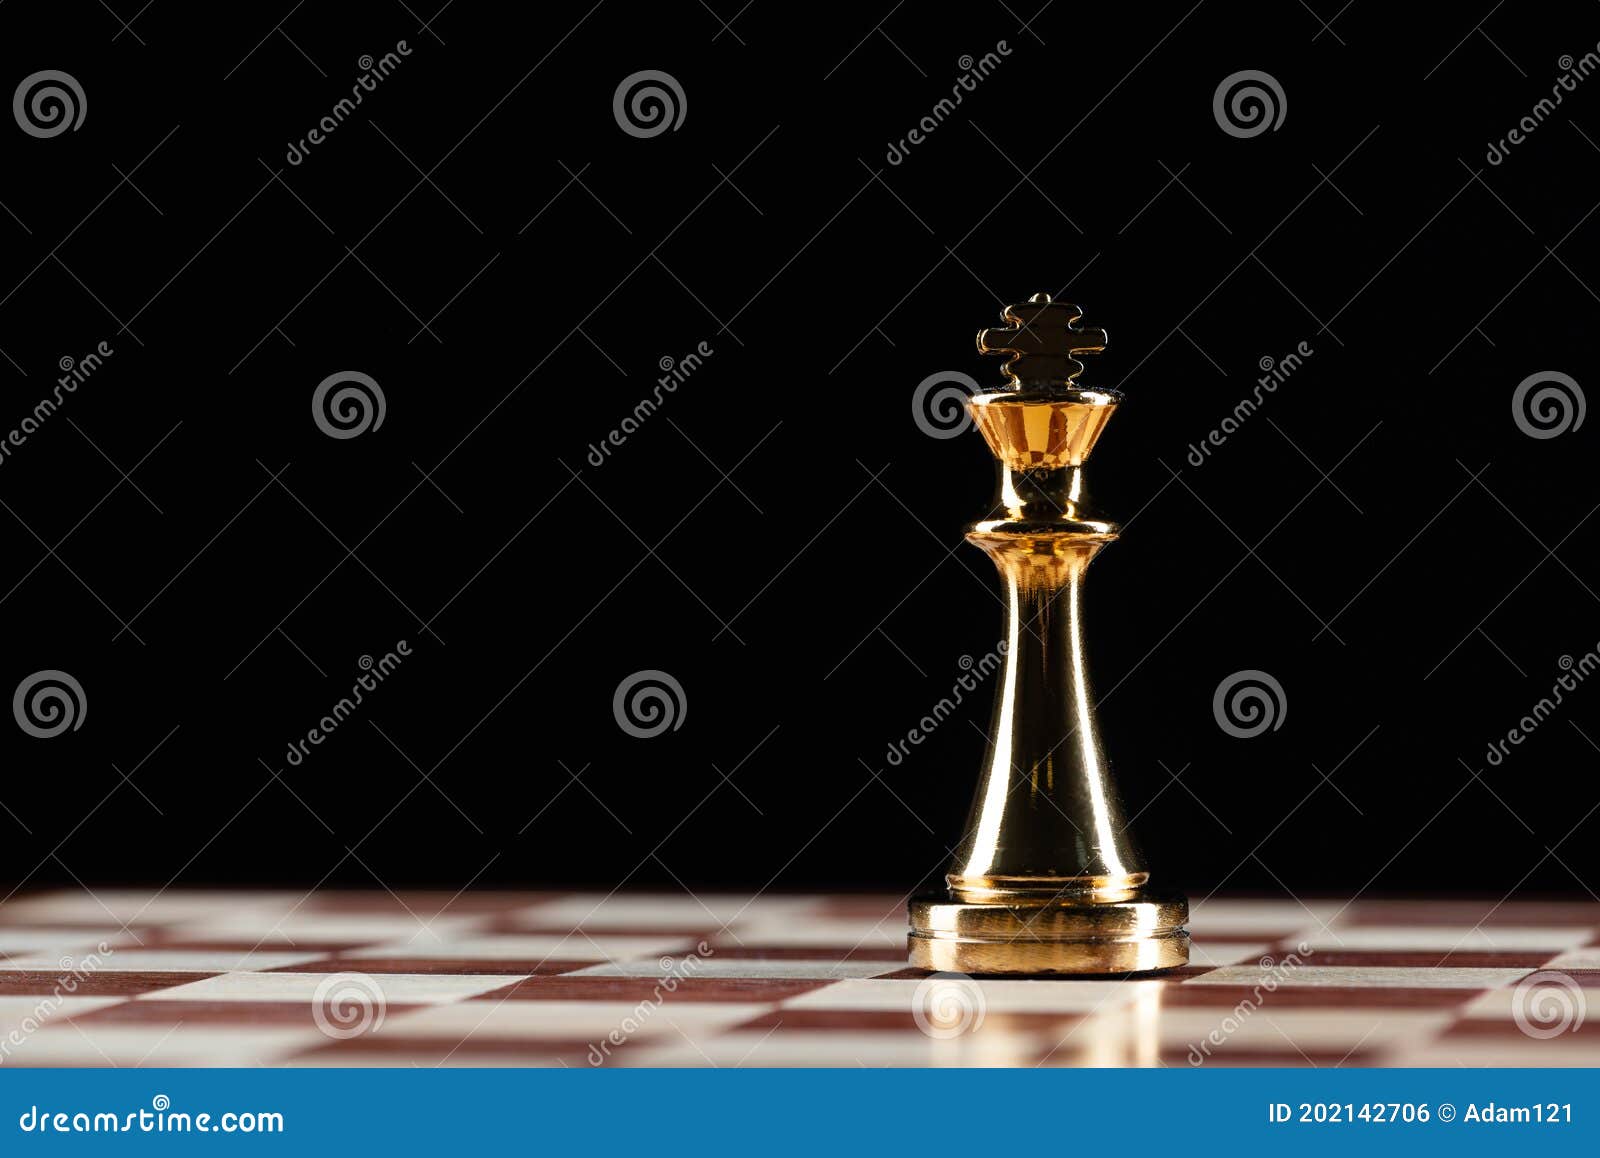 Rei de xadrez dourado em pé no conceito de tabuleiro de xadrez de